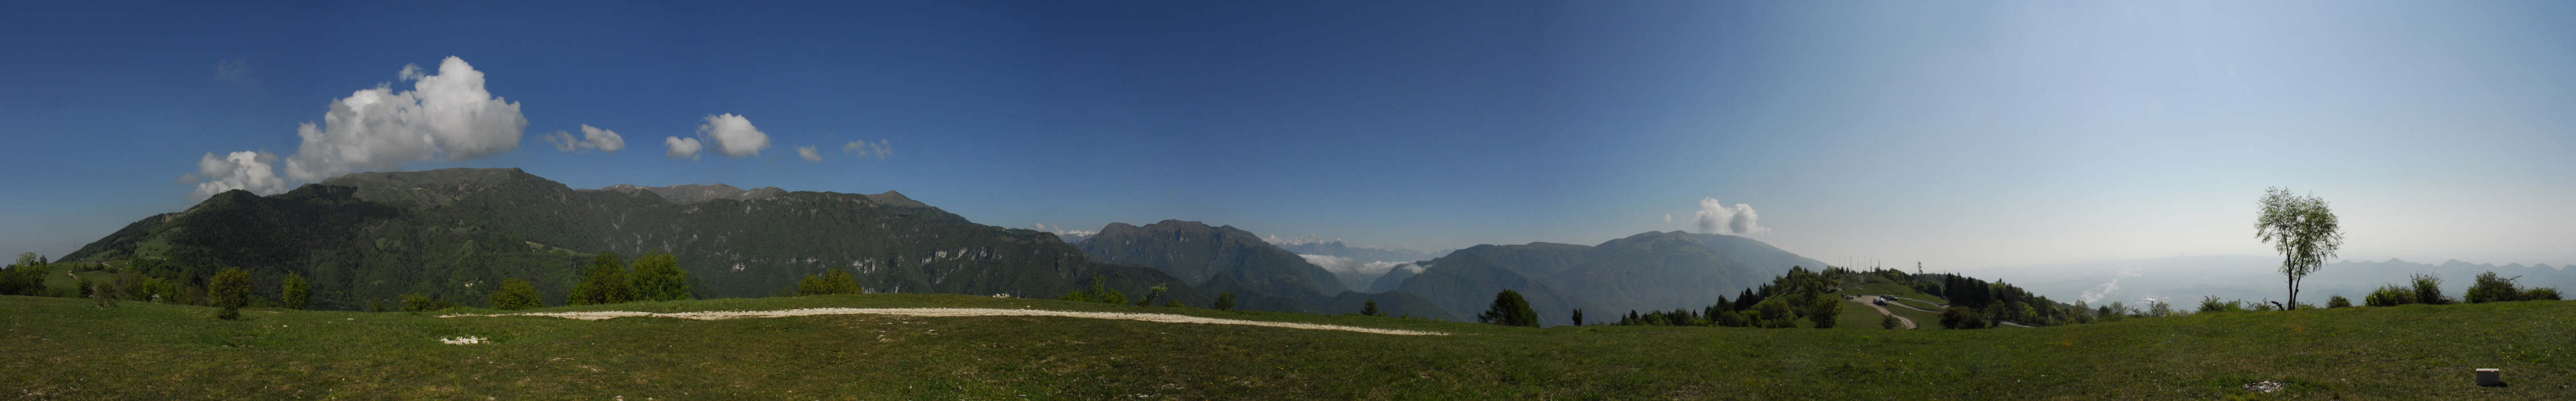 monte Tomba, Alano di Piave - fotografia panoramica